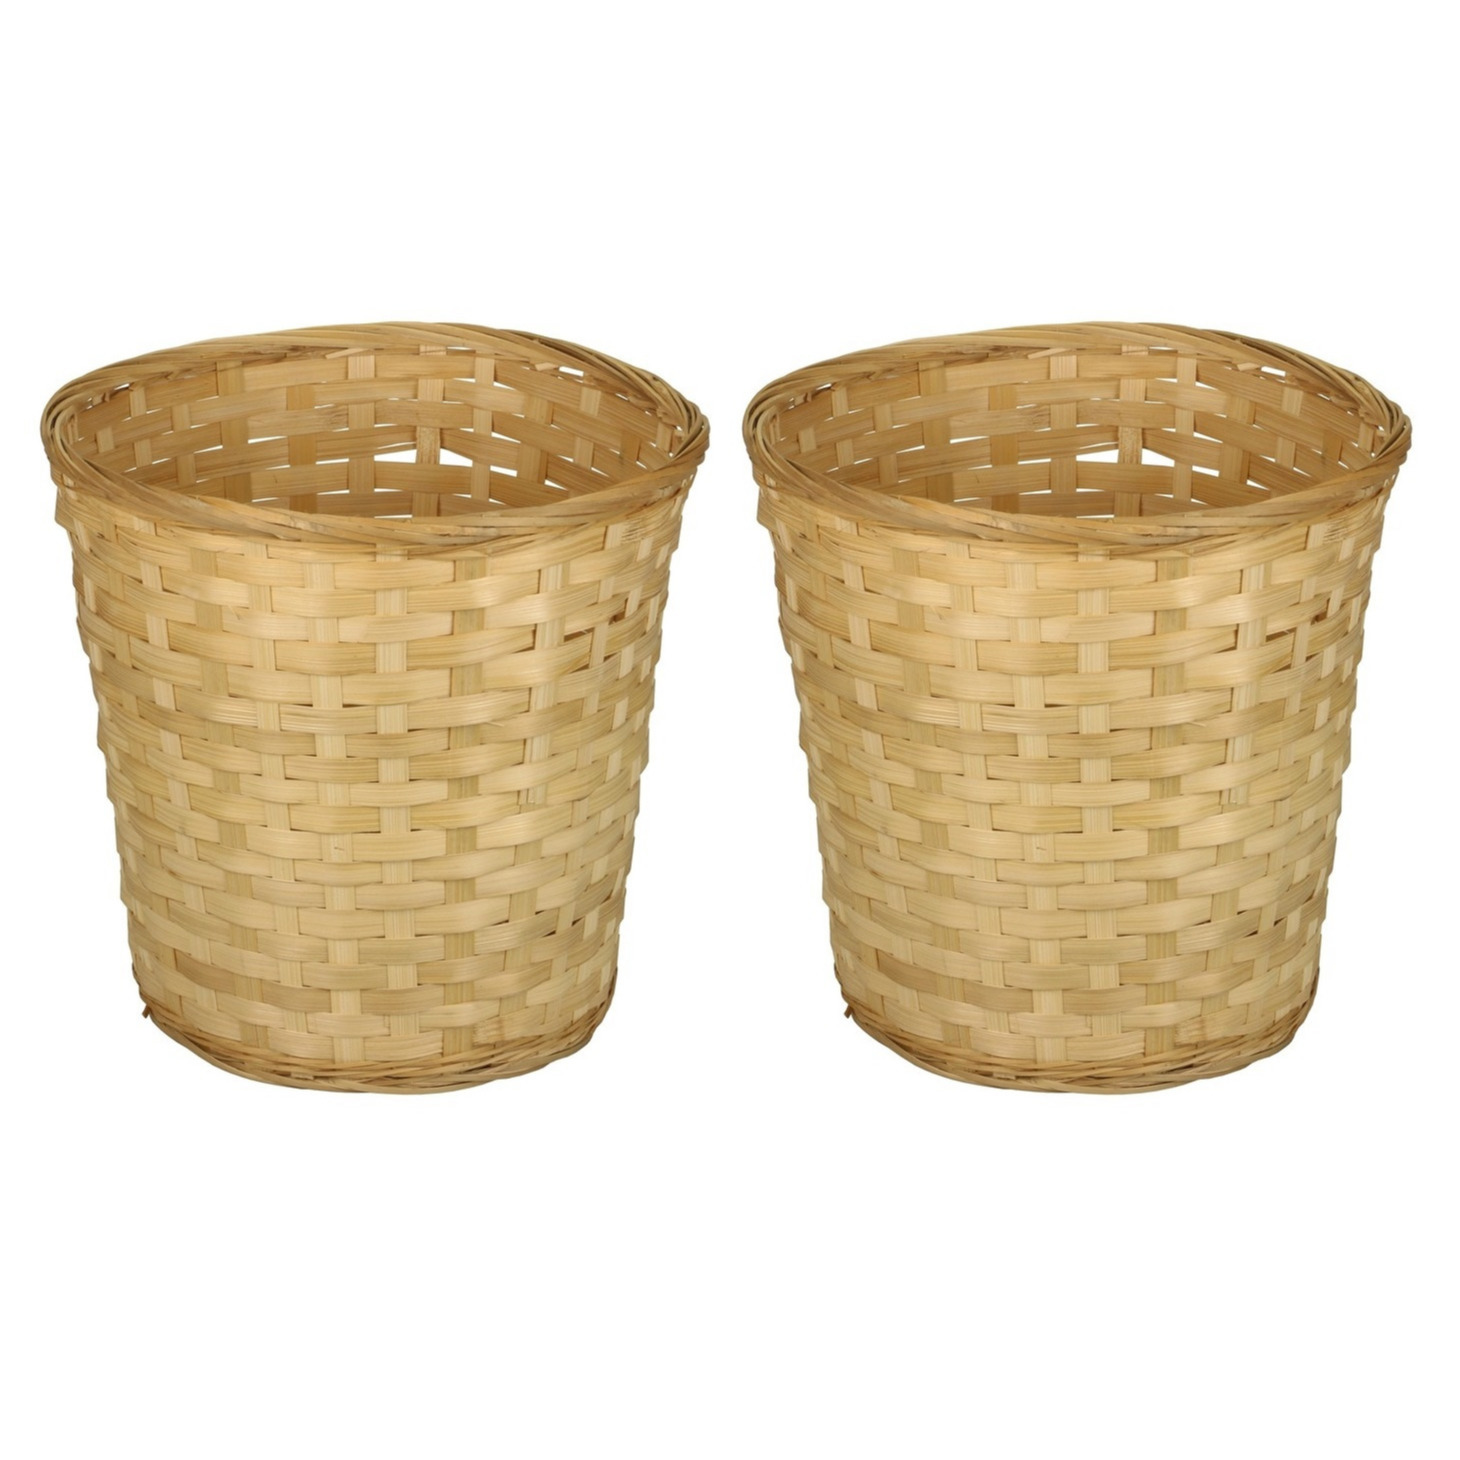 Pakket van 10x stuks ronde rieten-bamboe decoratie mandjes-manden 26 x 24 cm